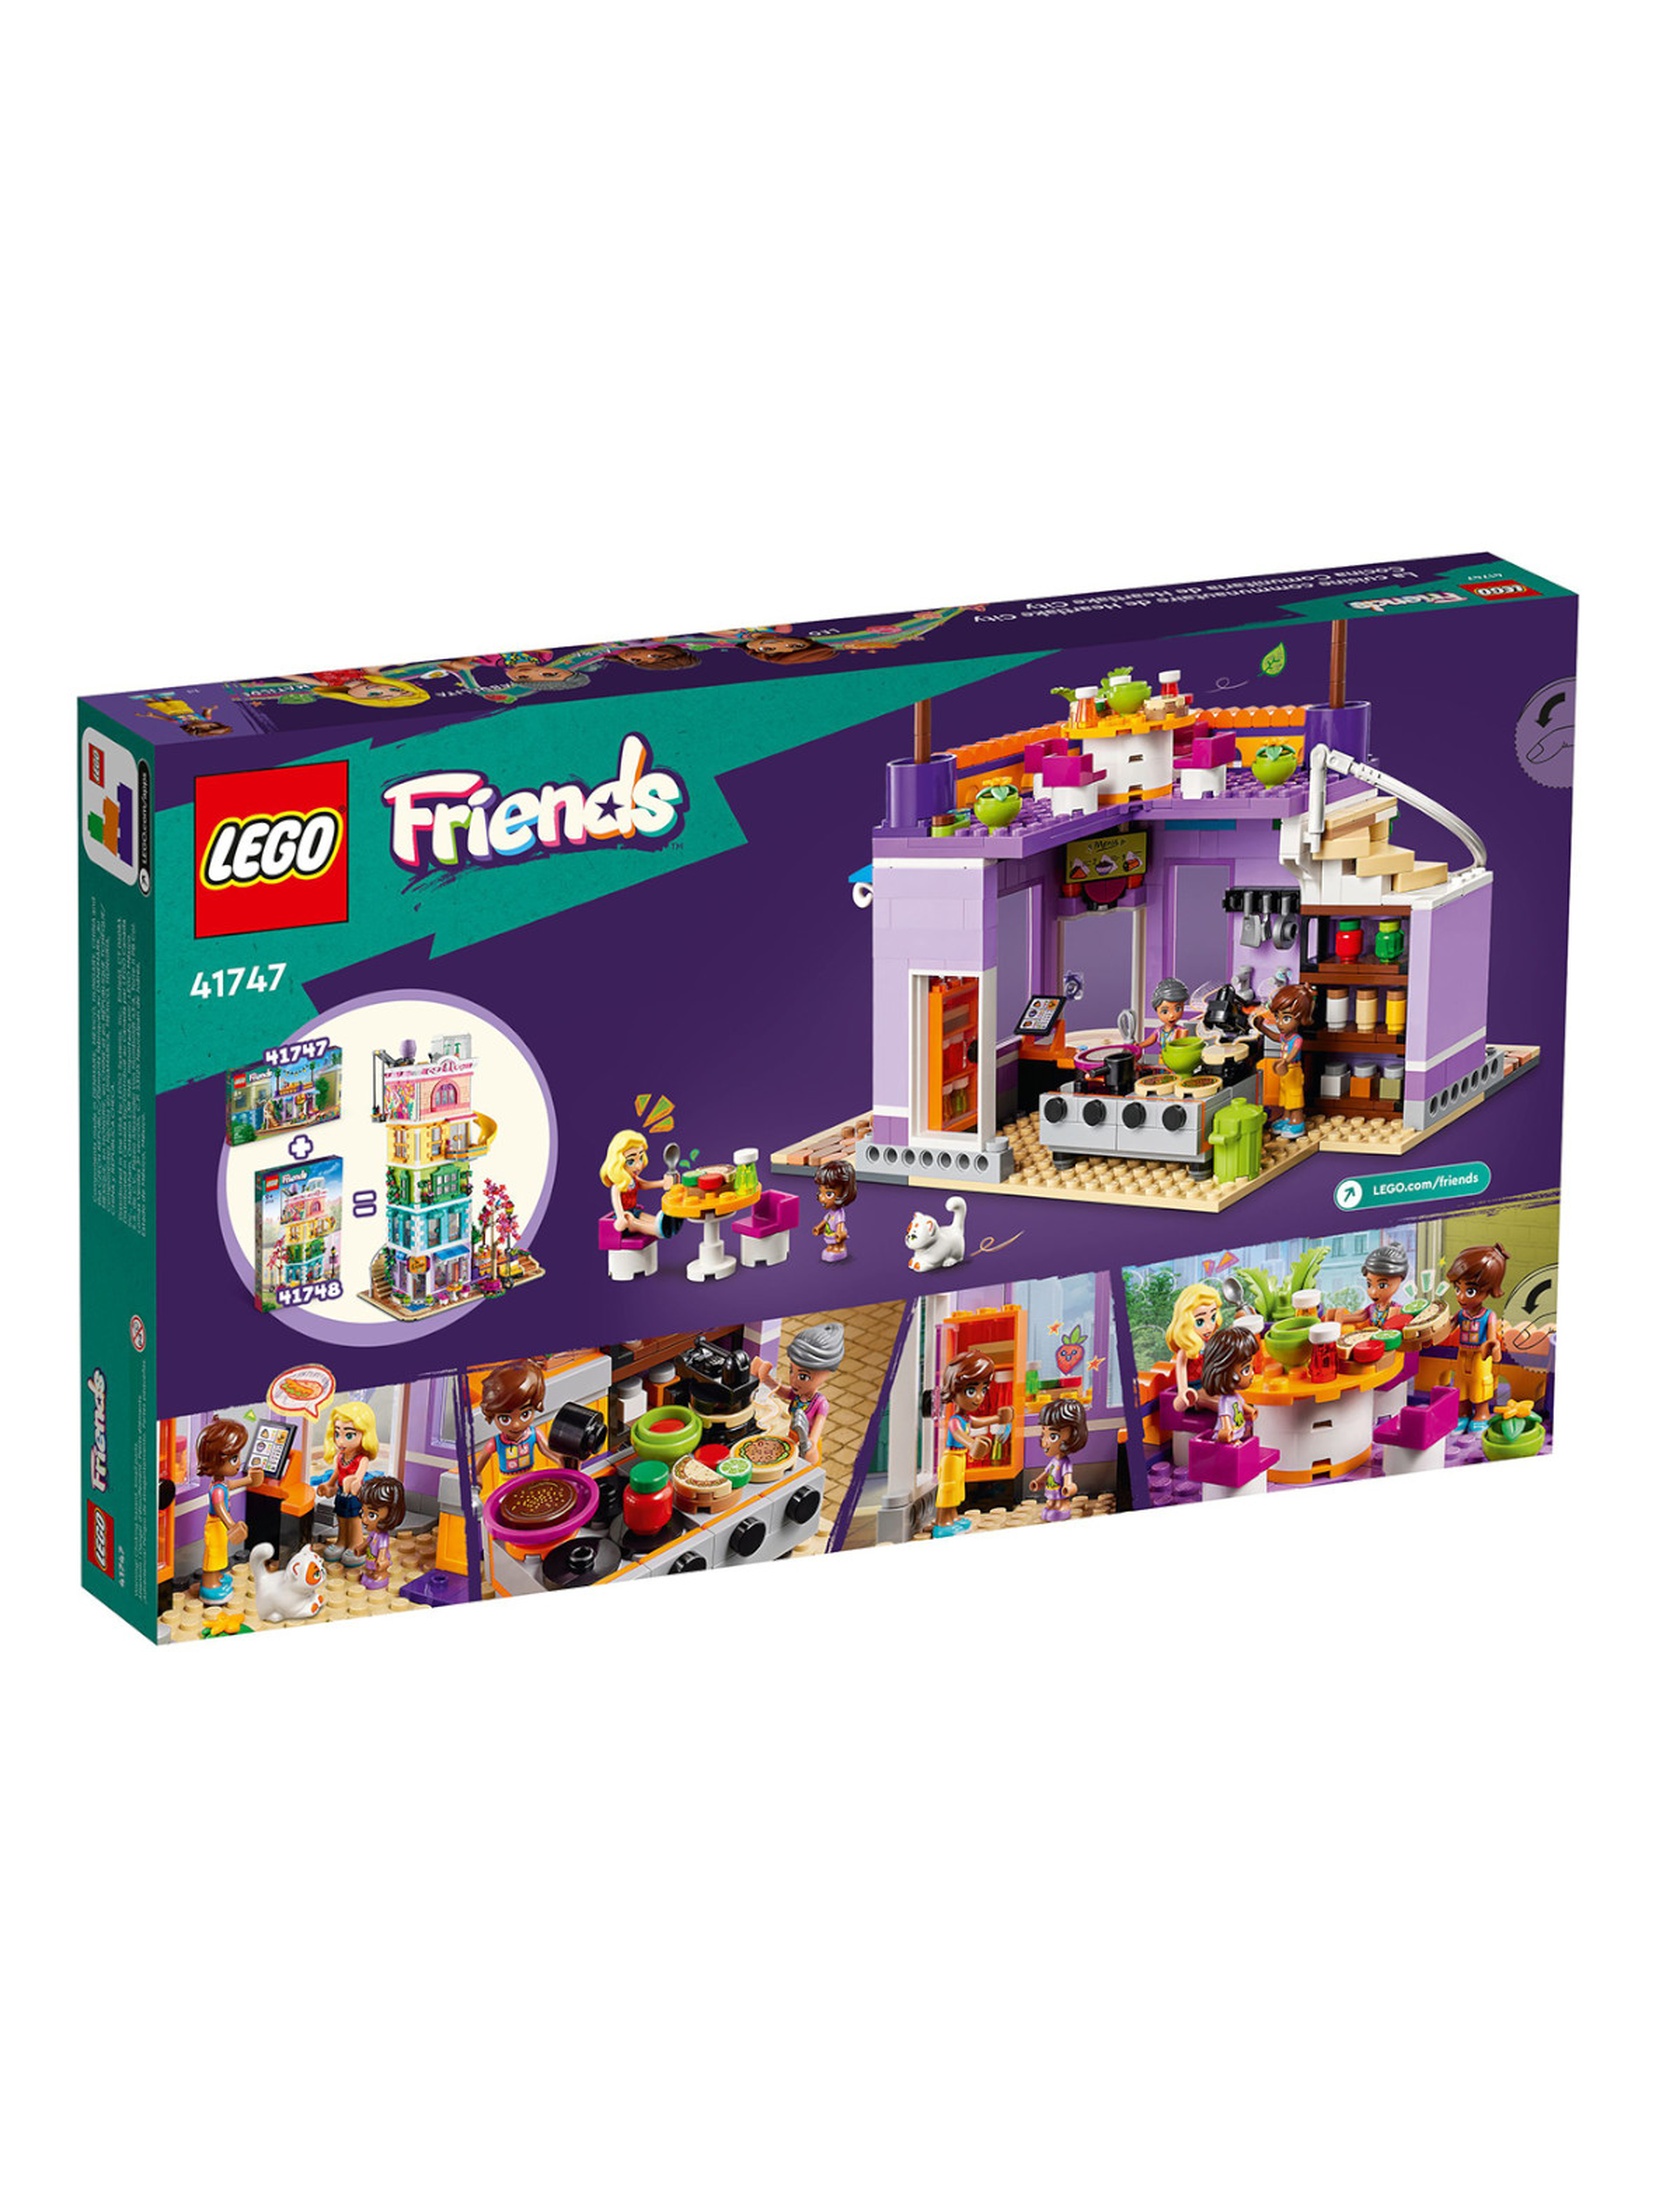 Klocki LEGO Friends 41747 Jadłodajnia w Heartlake - 695 elementów, wiek 8 +